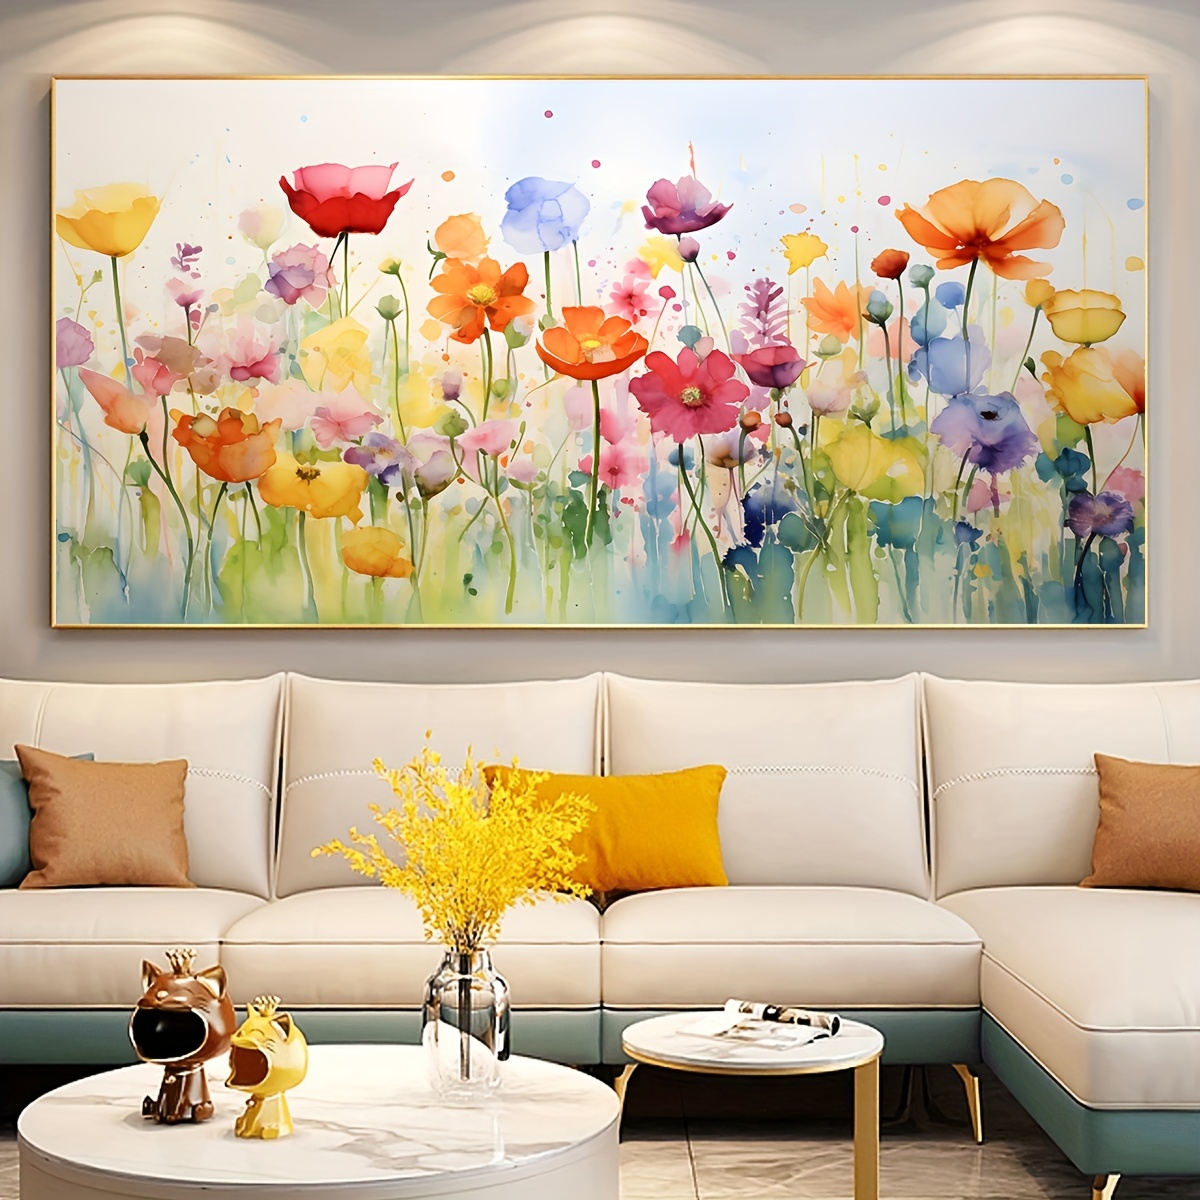  Sweet Home - Lienzo decorativo para pared, diseño de corazón  blanco y dulce para el hogar, decoración moderna de pintura abstracta, obra  de arte de decoración de sala de estar (31